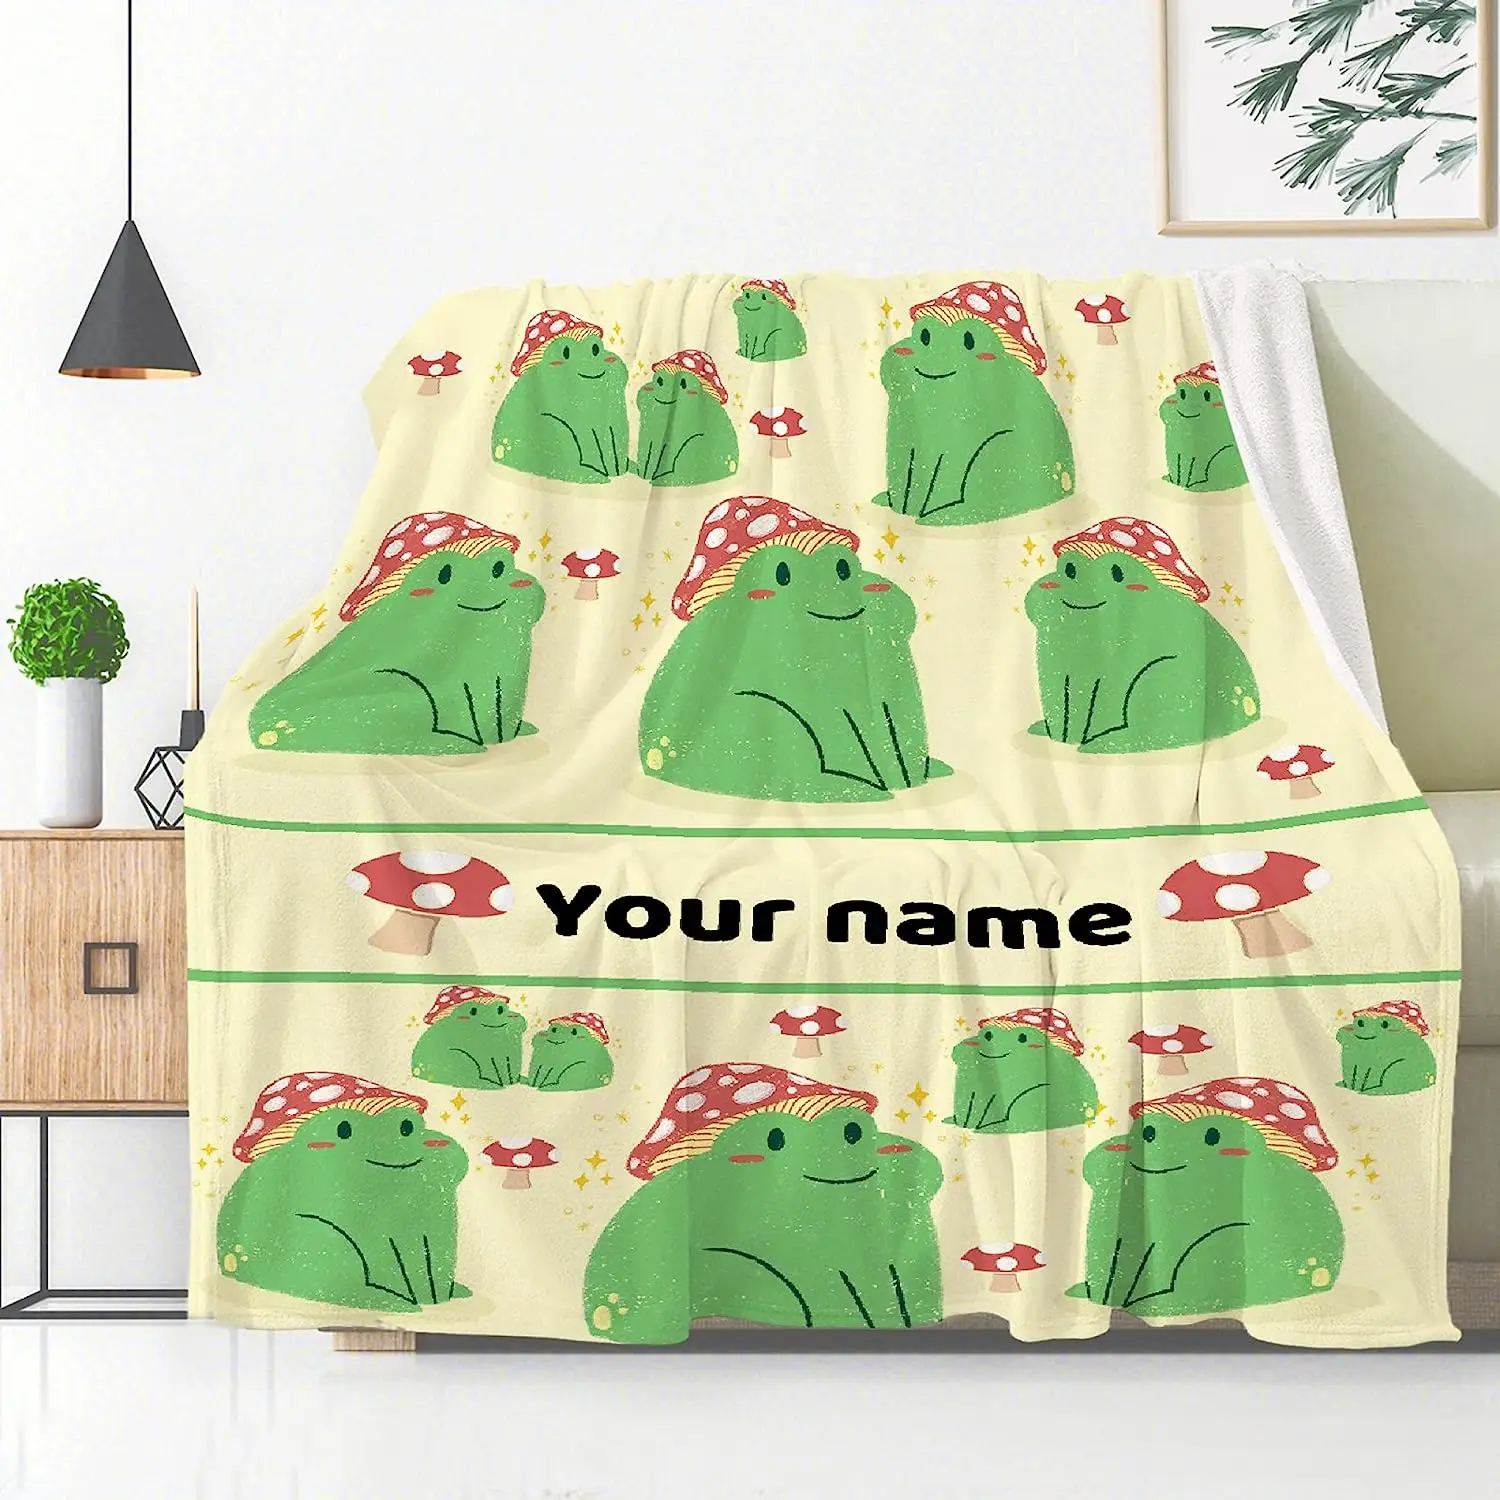 

Индивидуальные детские одеяла, индивидуальное название лягушки, гриба, плед, подарок для новорожденного, душ, мягкое индивидуальное пледовое одеяло